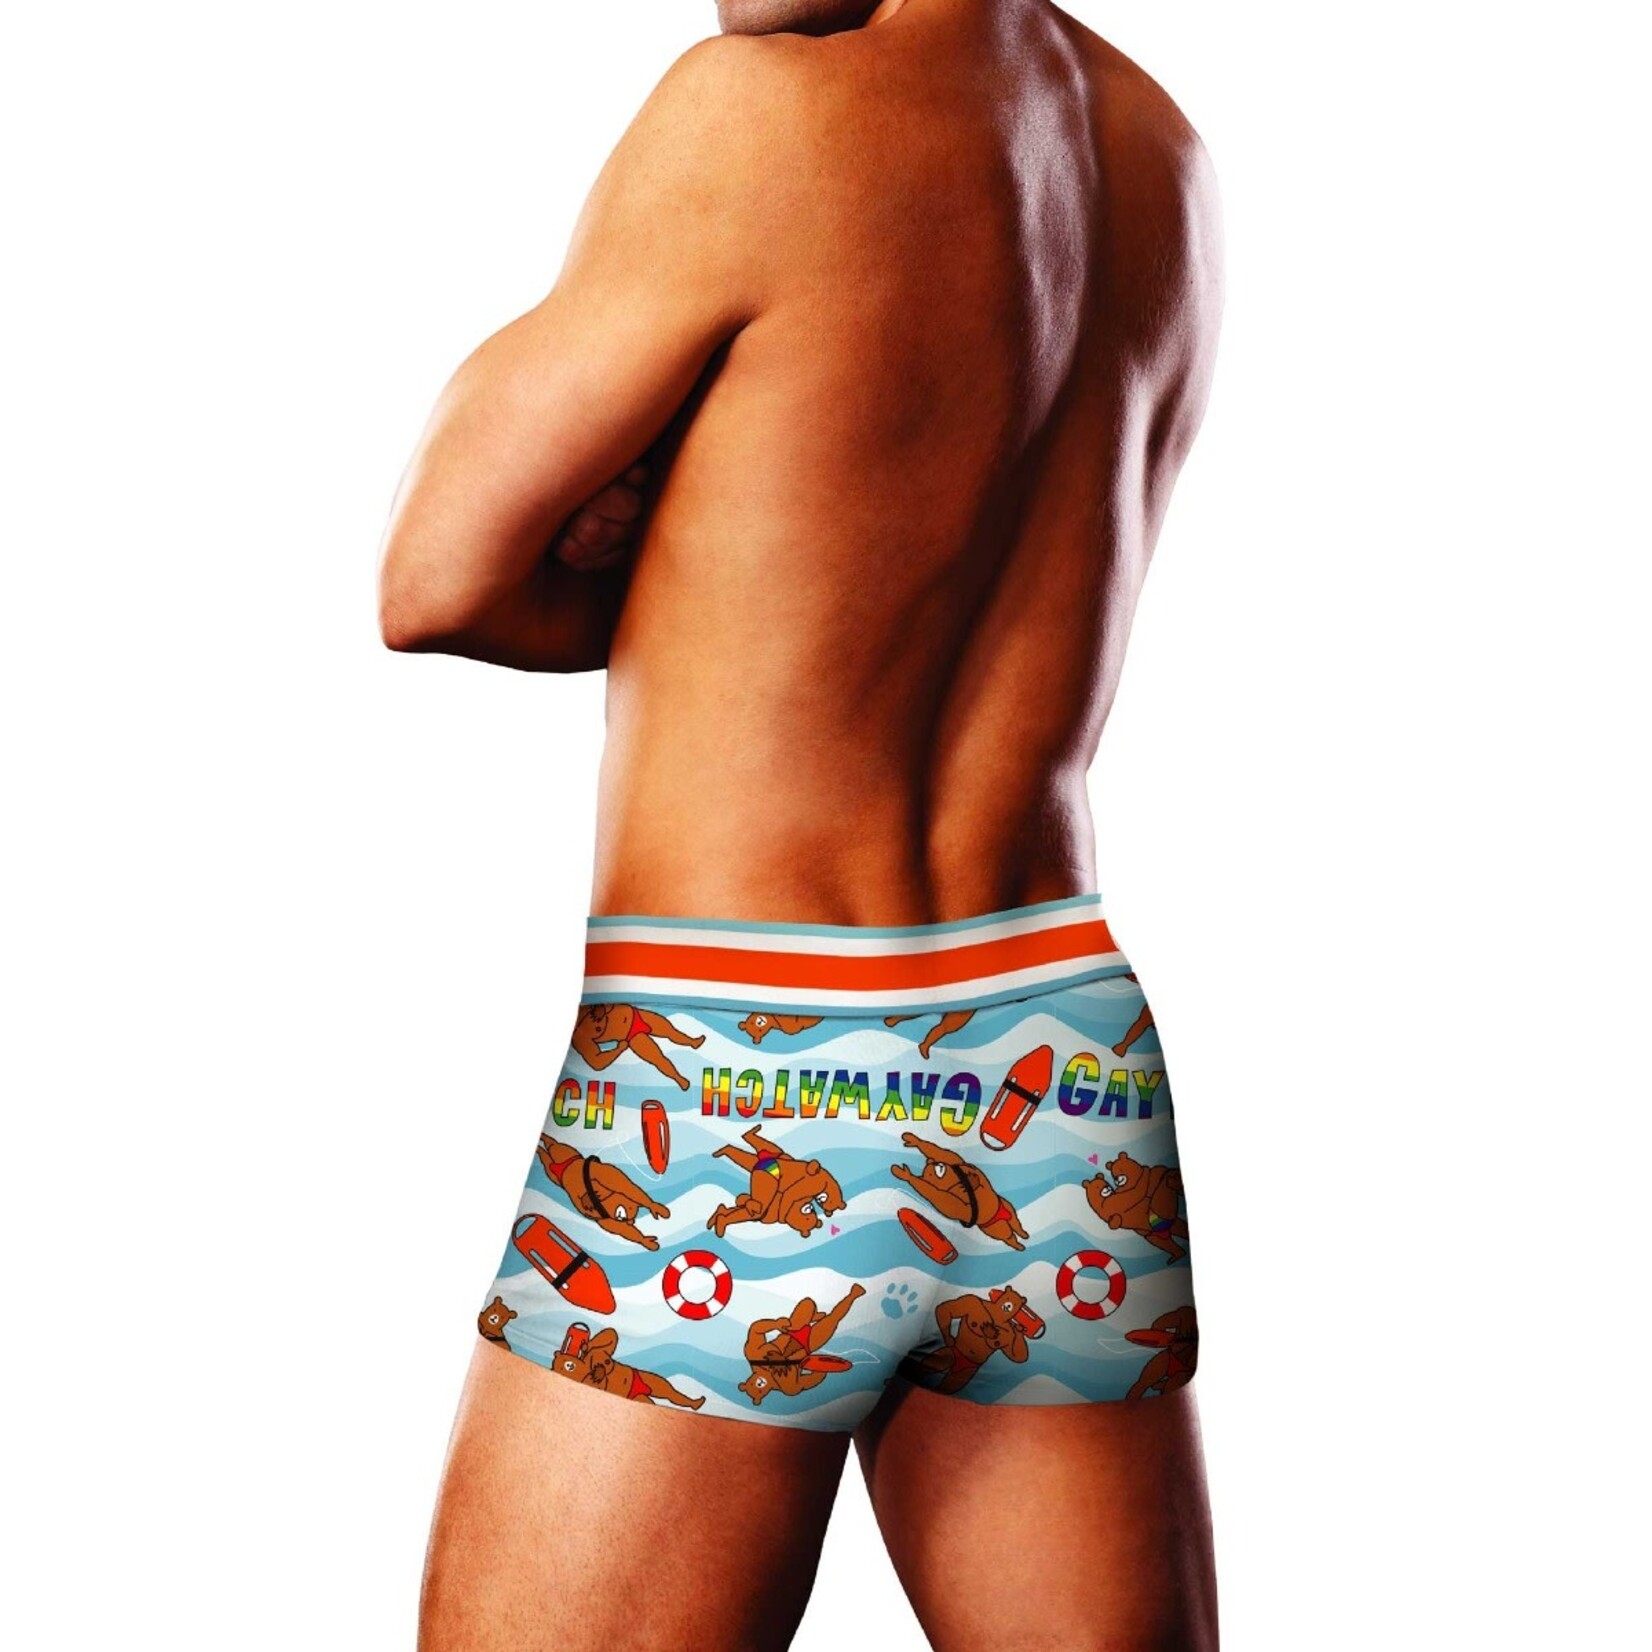 Prowler UK Gaywatch Summer Underwear